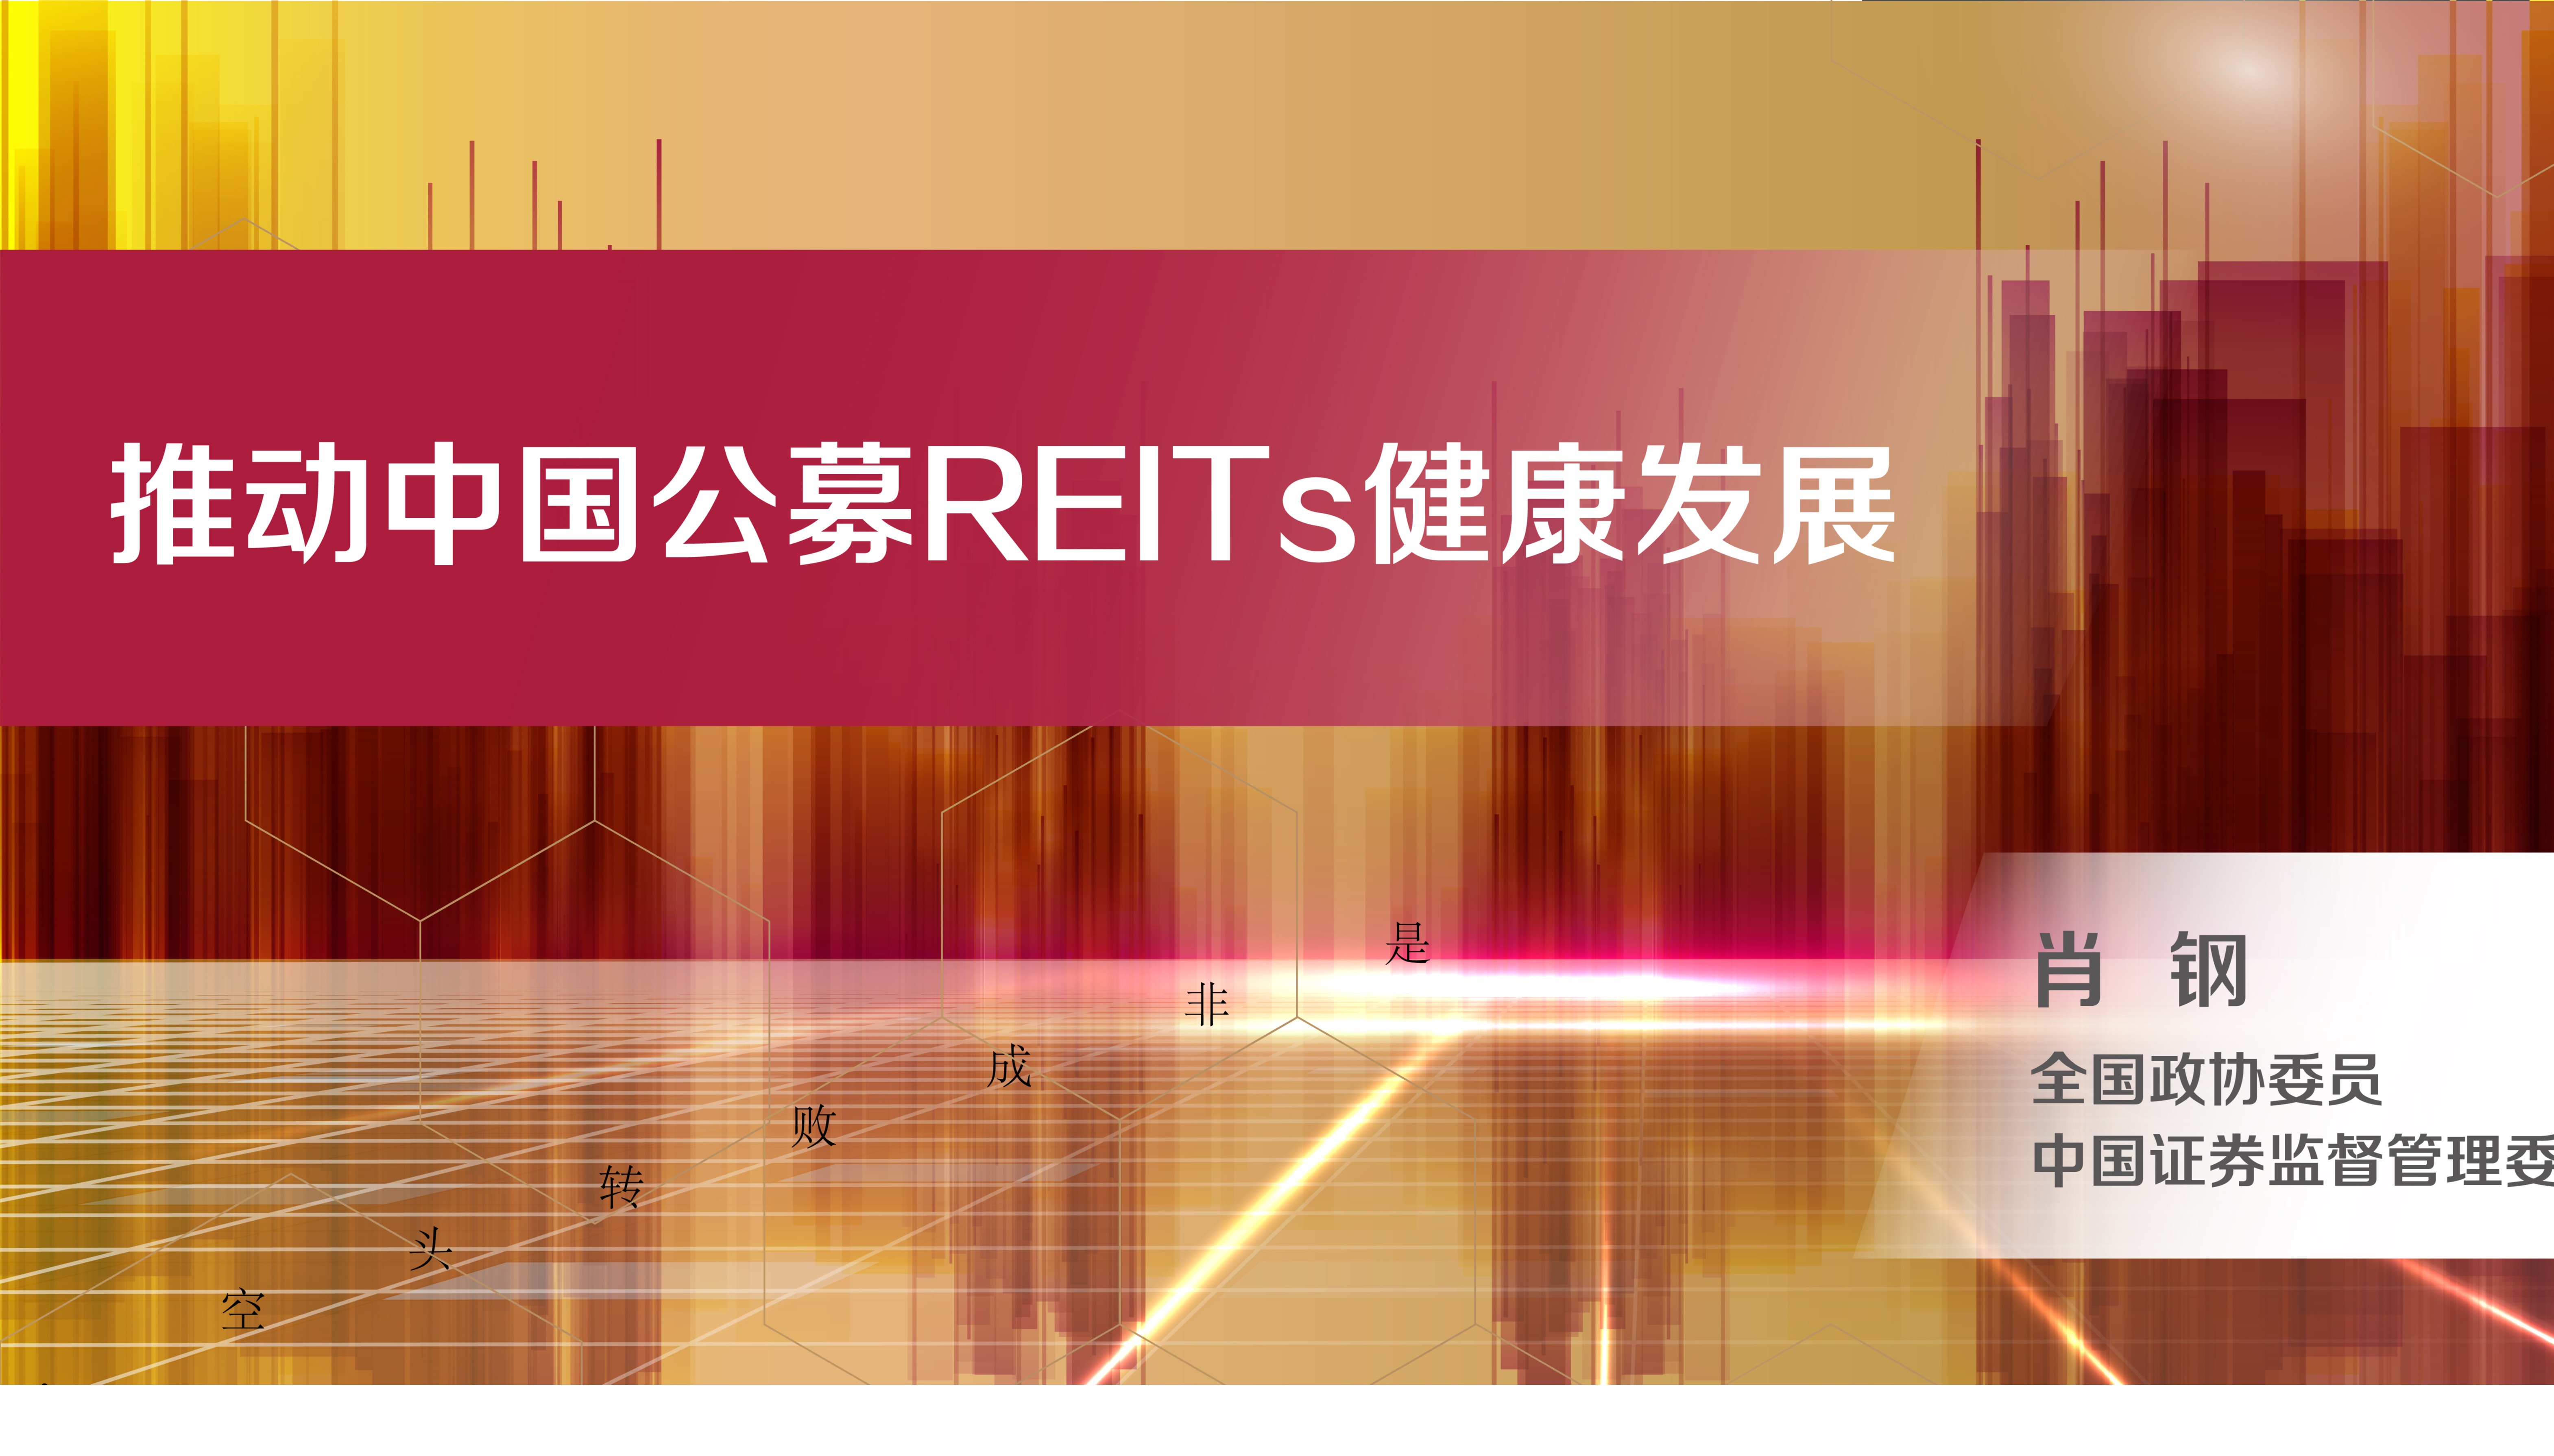 REITs助力探索中国不动产皇冠足球比分新模式——《中国公募REITs的实践与方向》成功发布